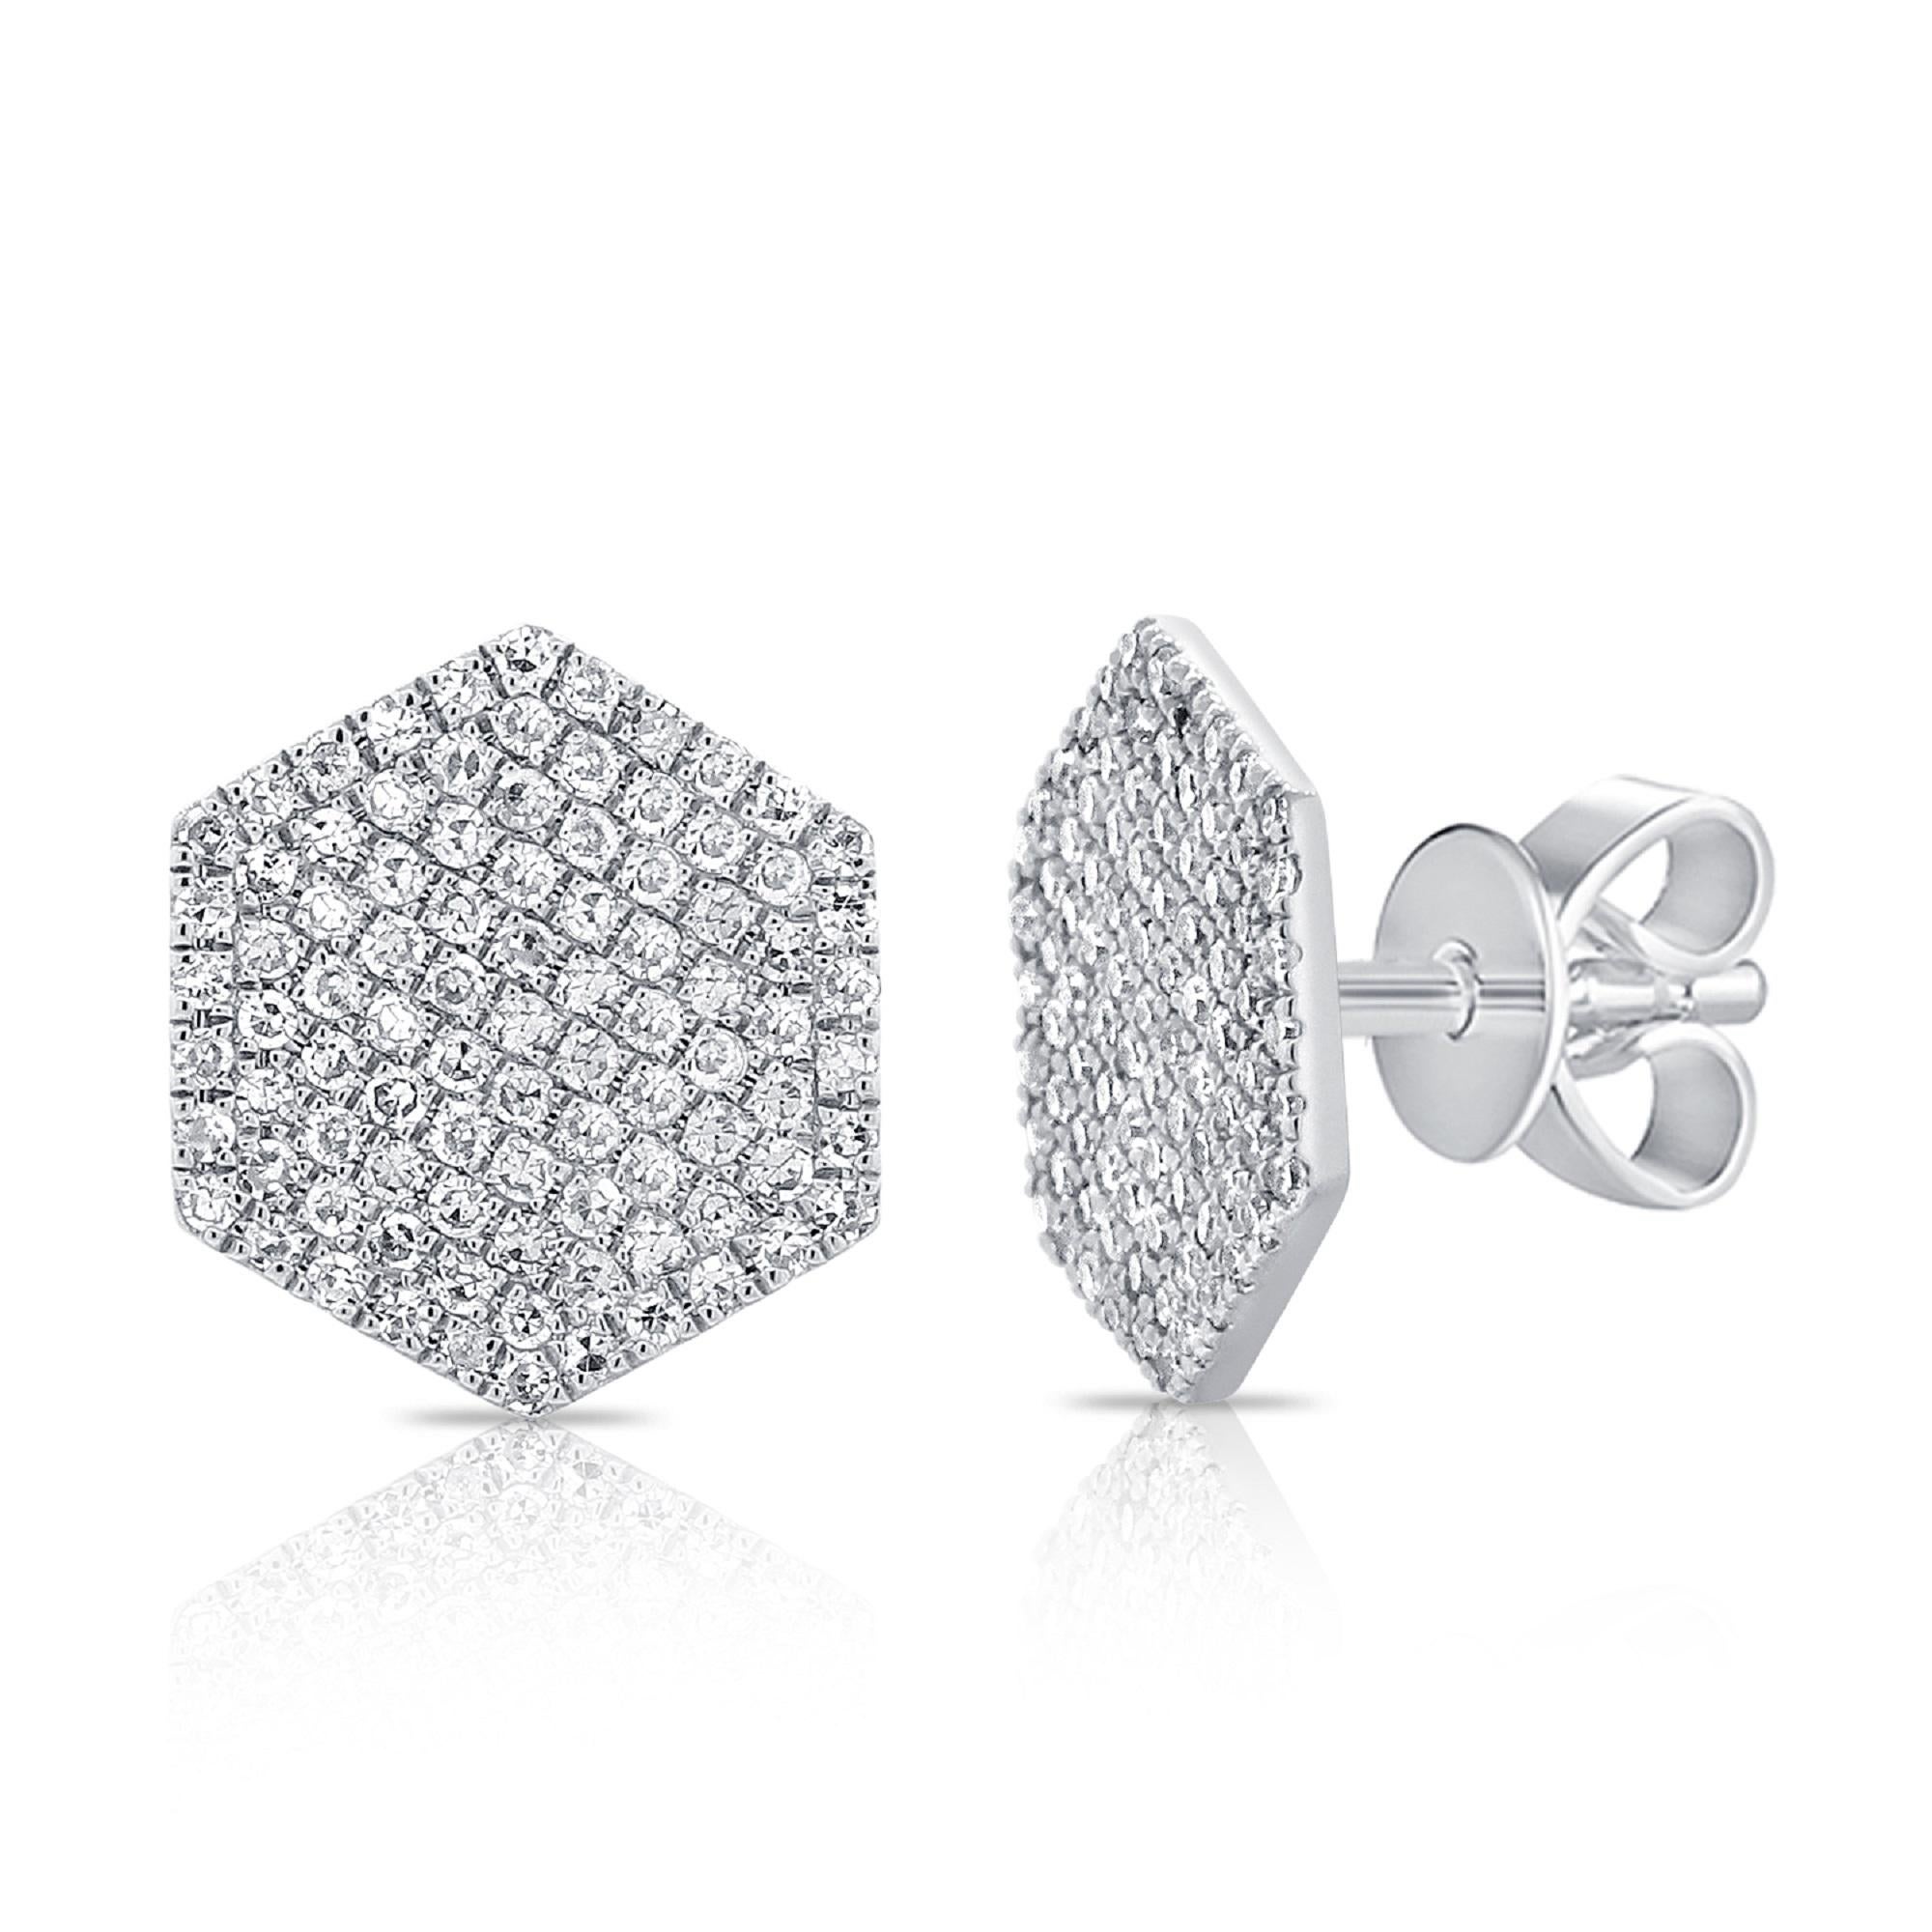 Single Cut 14K White Gold Hexagon Diamond Stud Earrings for Her For Sale